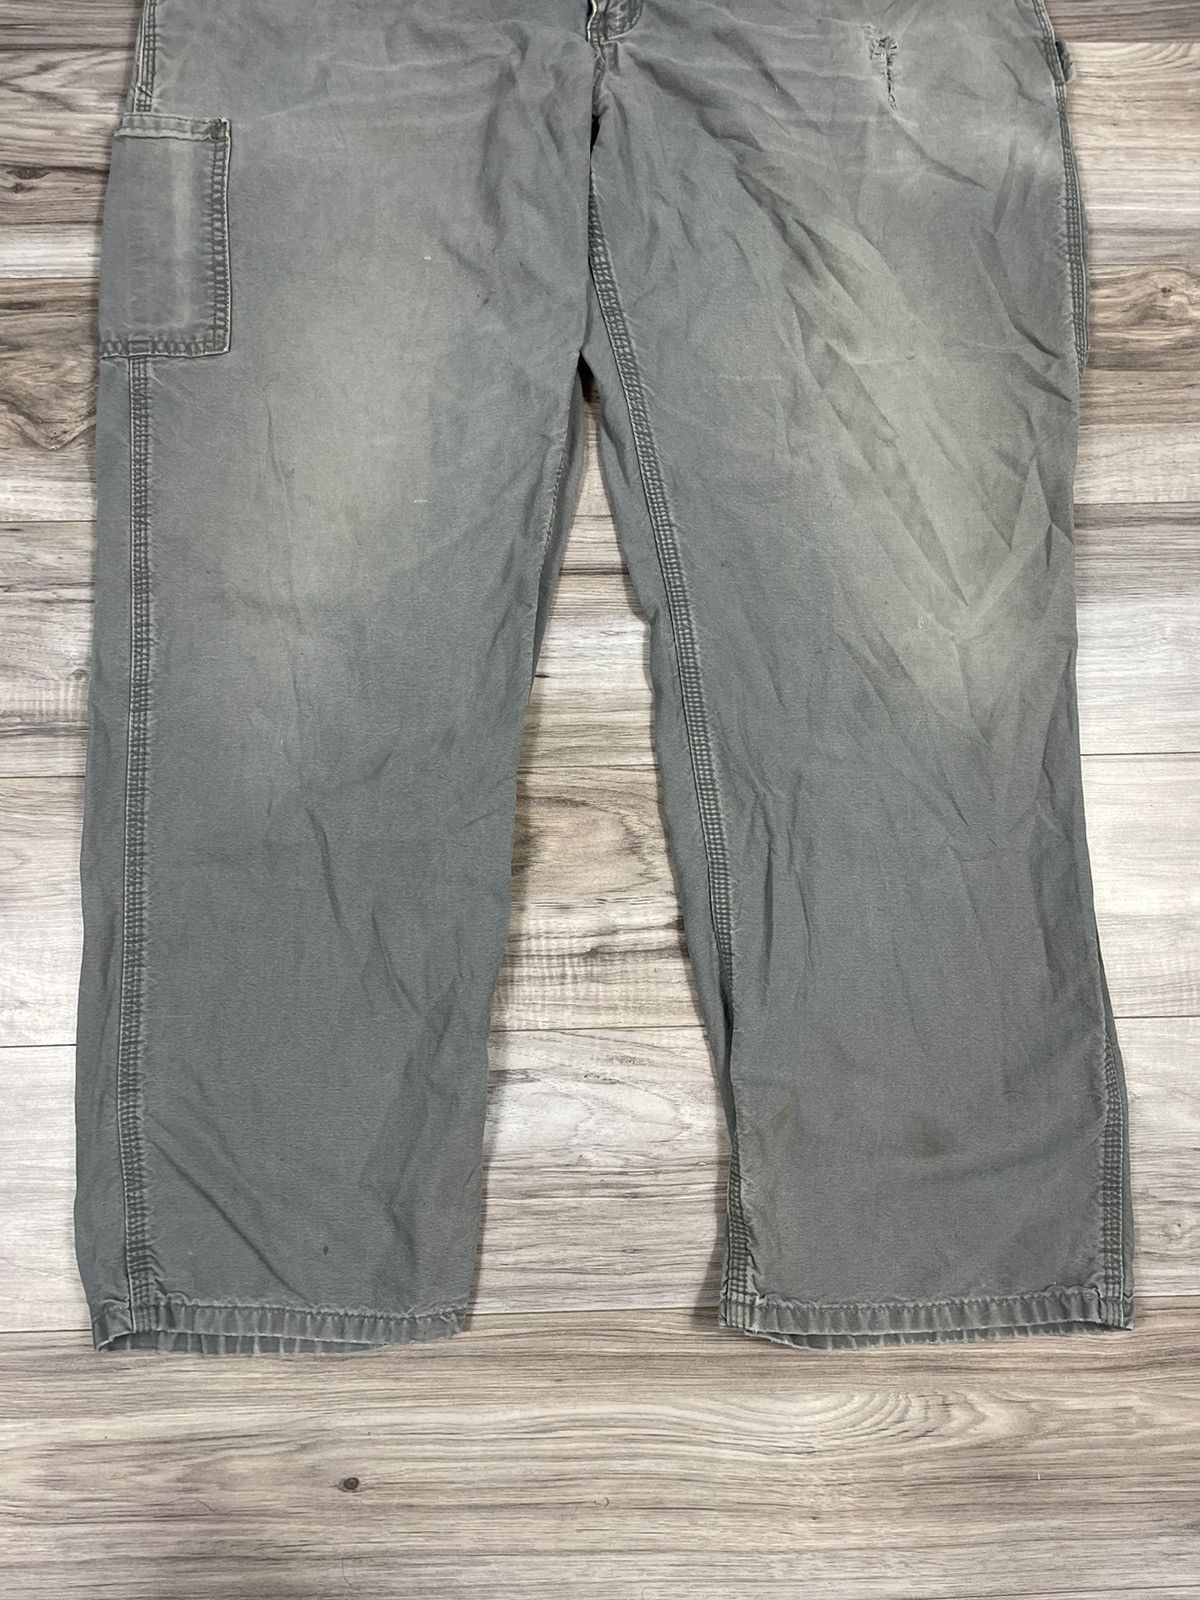 Carhartt Carhartt Original Dungaree Fit Carpenter Pants Size US 38 / EU 54 - 4 Thumbnail